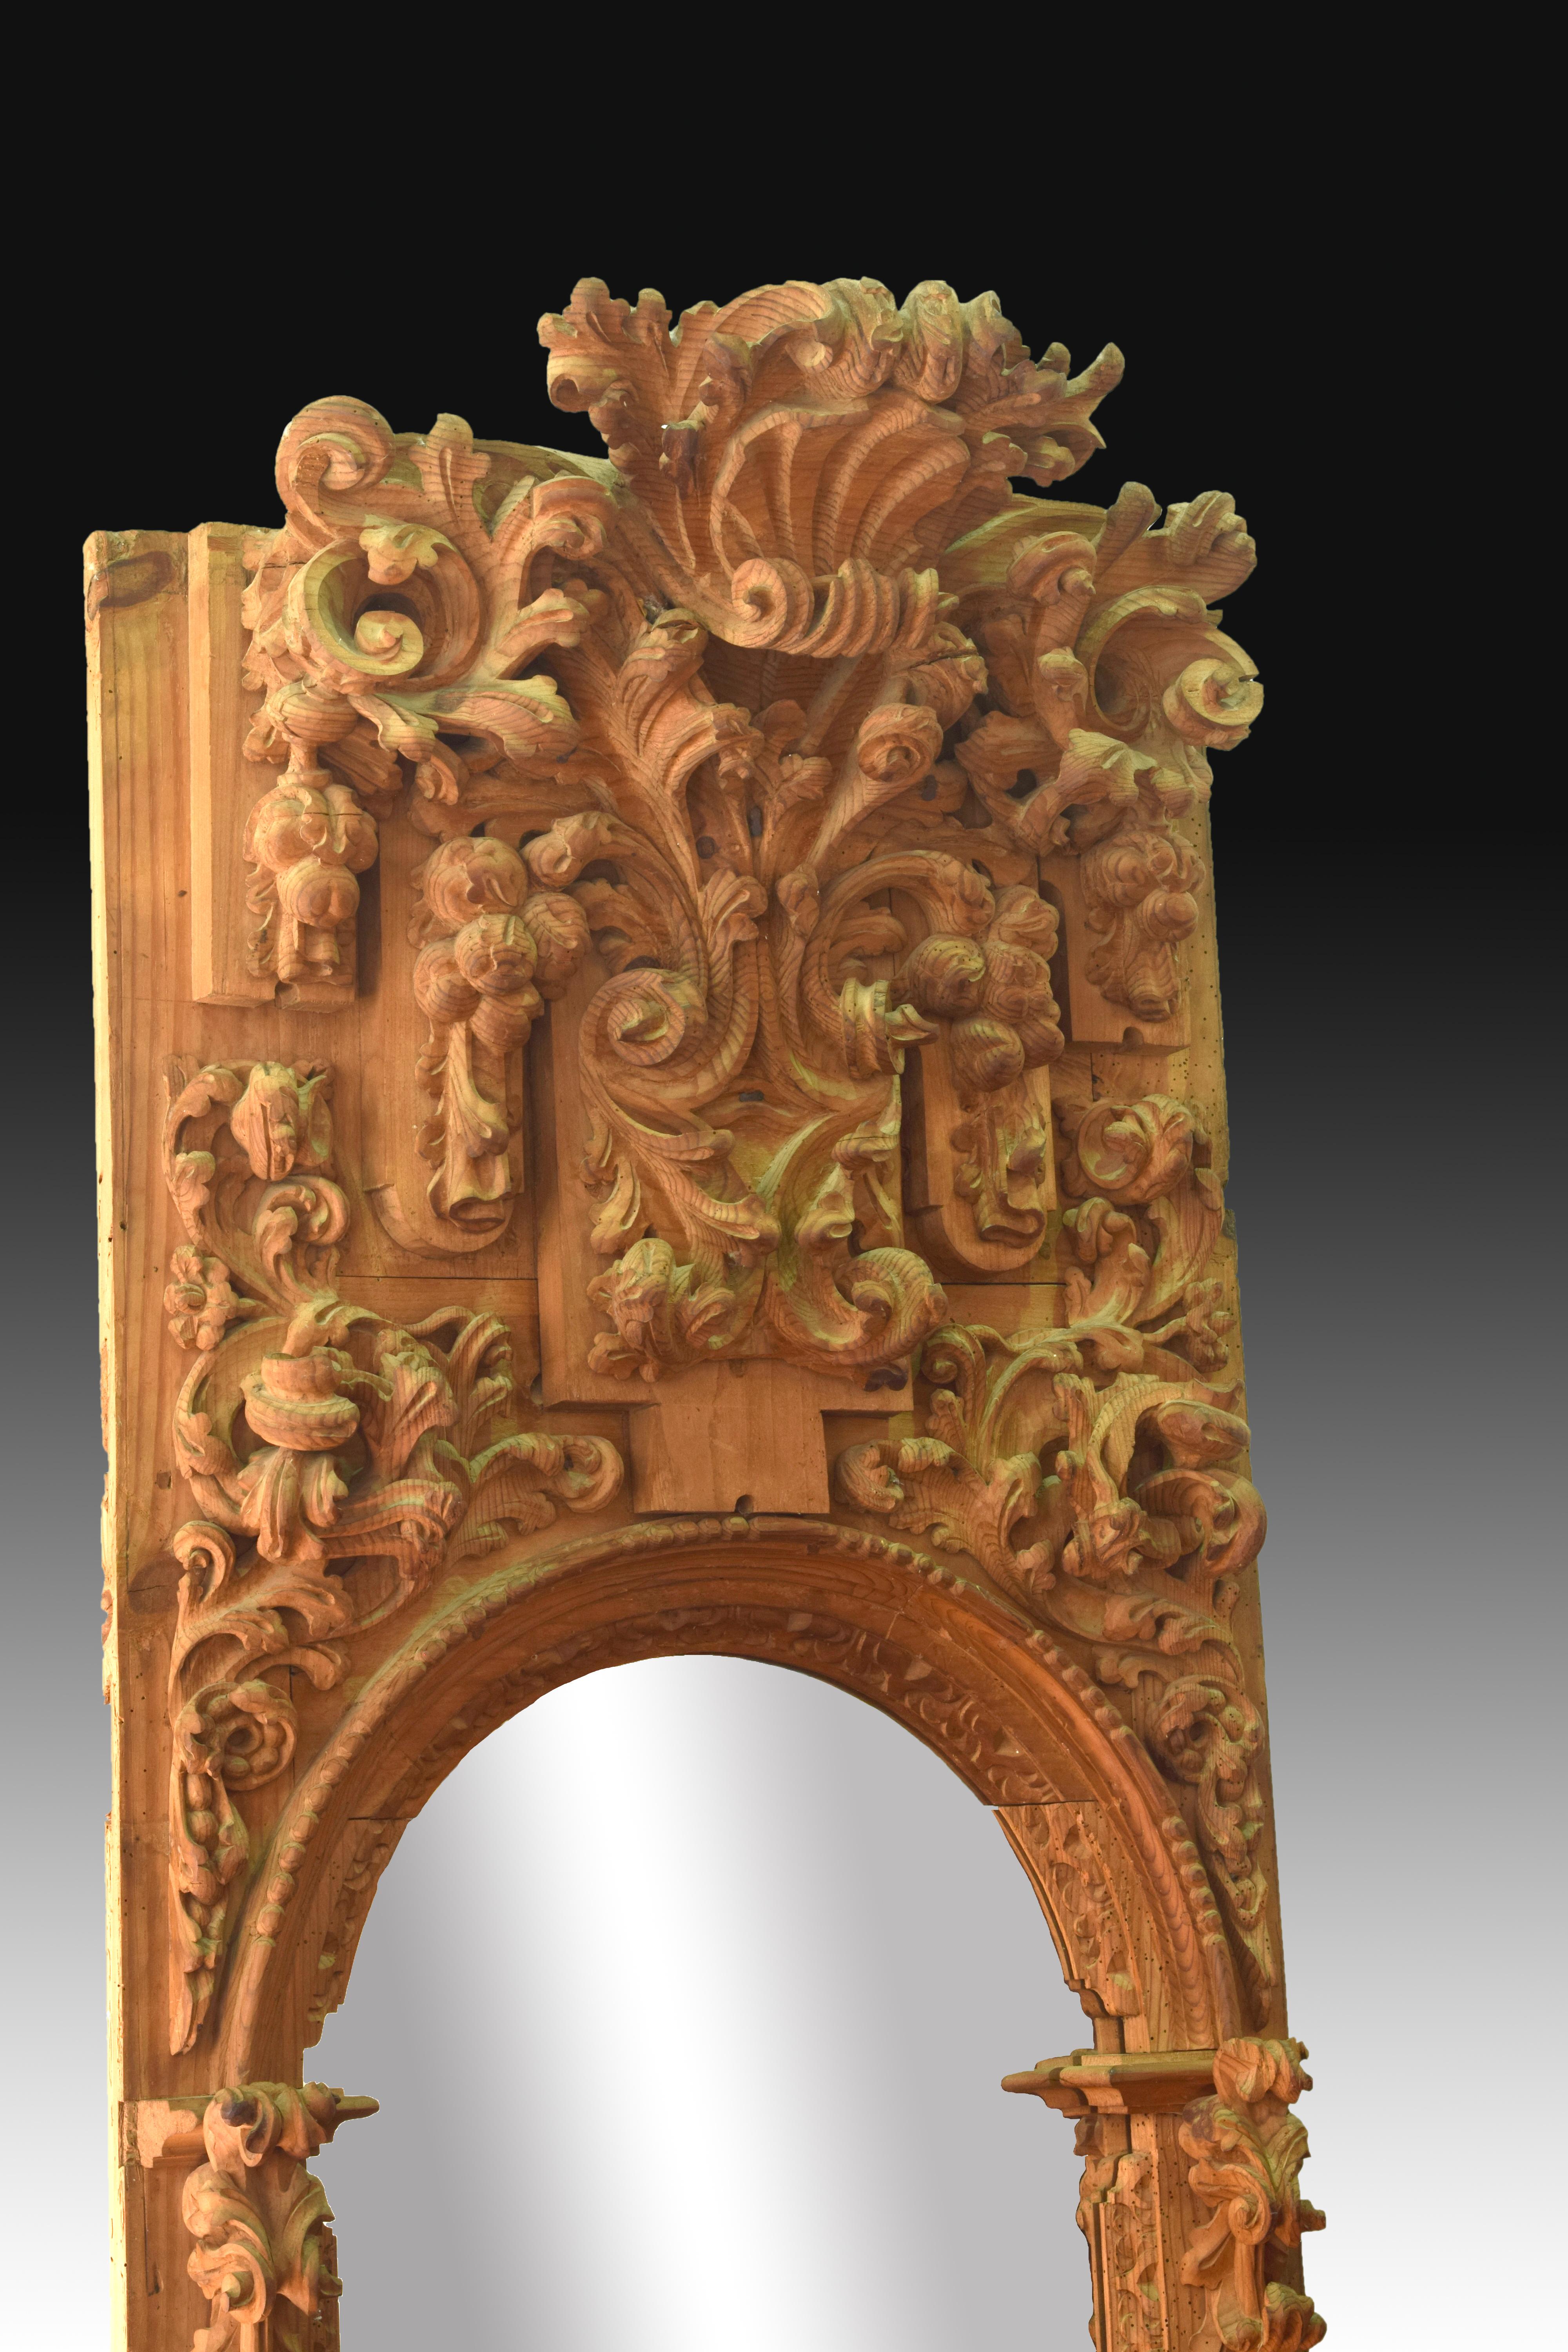 Paire de fragments d'autel ou niches en bois de pin sculpté qui sont décorés d'une série d'importantes sculptures avec de nombreux volumes à thème végétal, des volutes, des cordes, des détails architecturaux, des tissus, etc., disposés